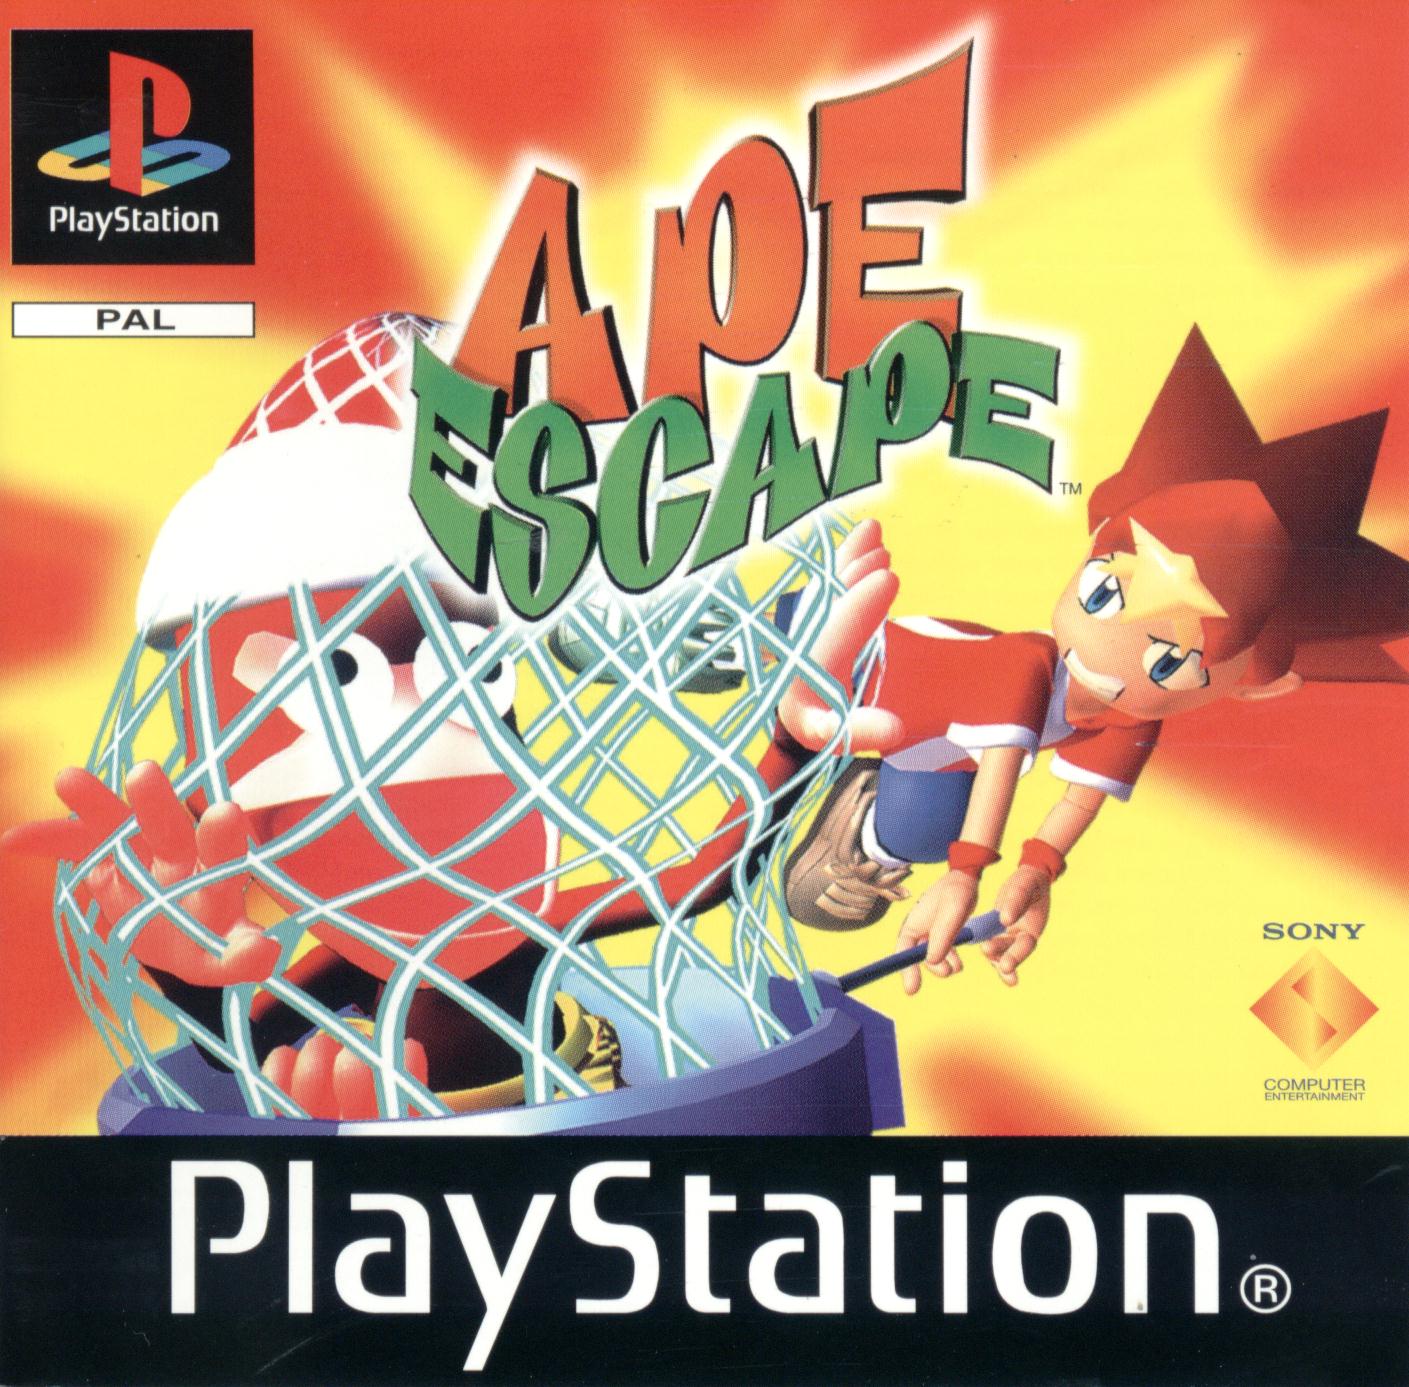 Pochette du jeu vidéo Ape Escape